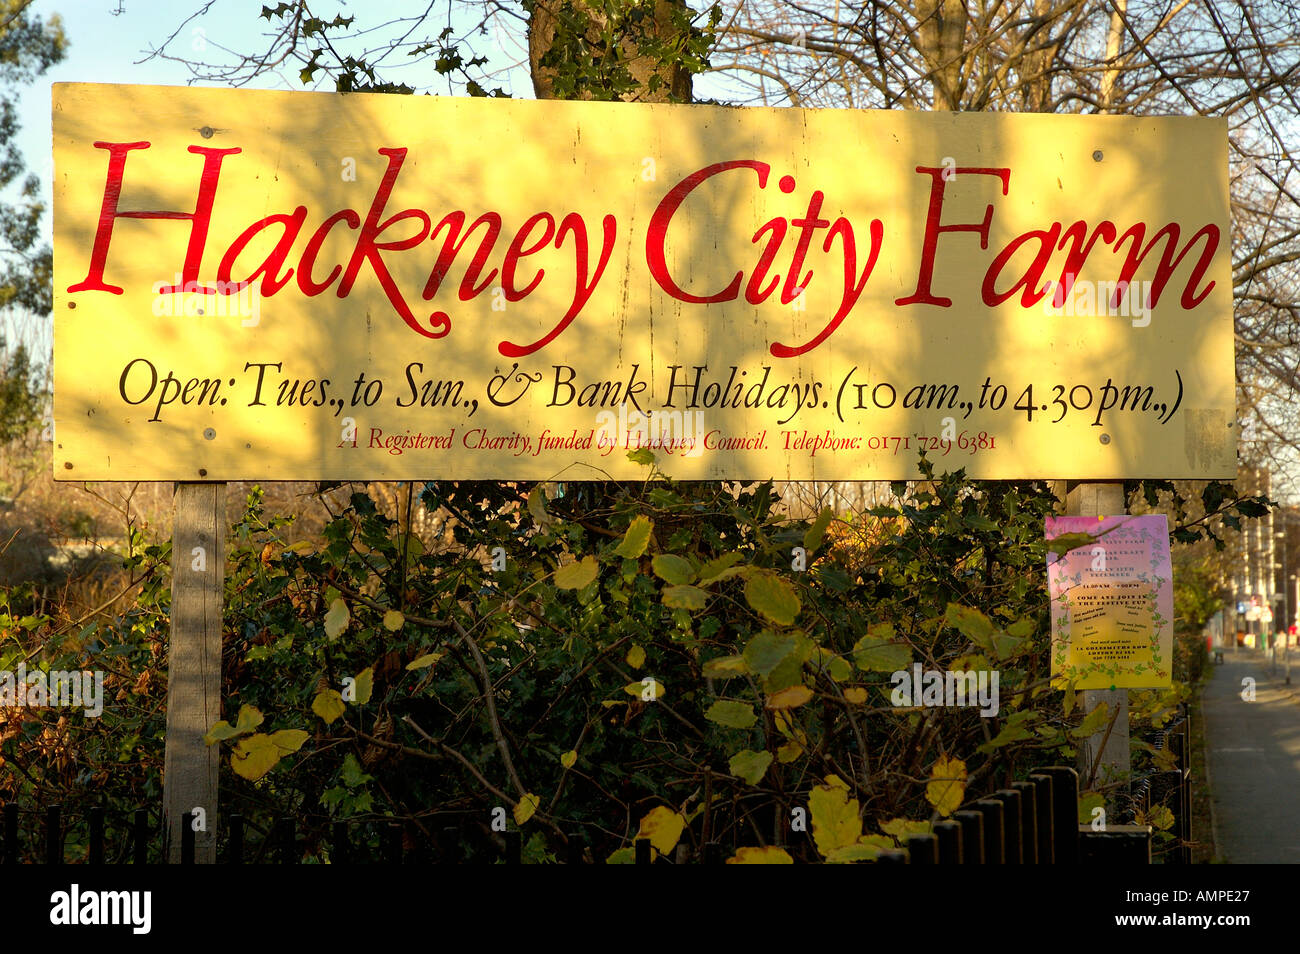 Hackney City Farm Stock Photo